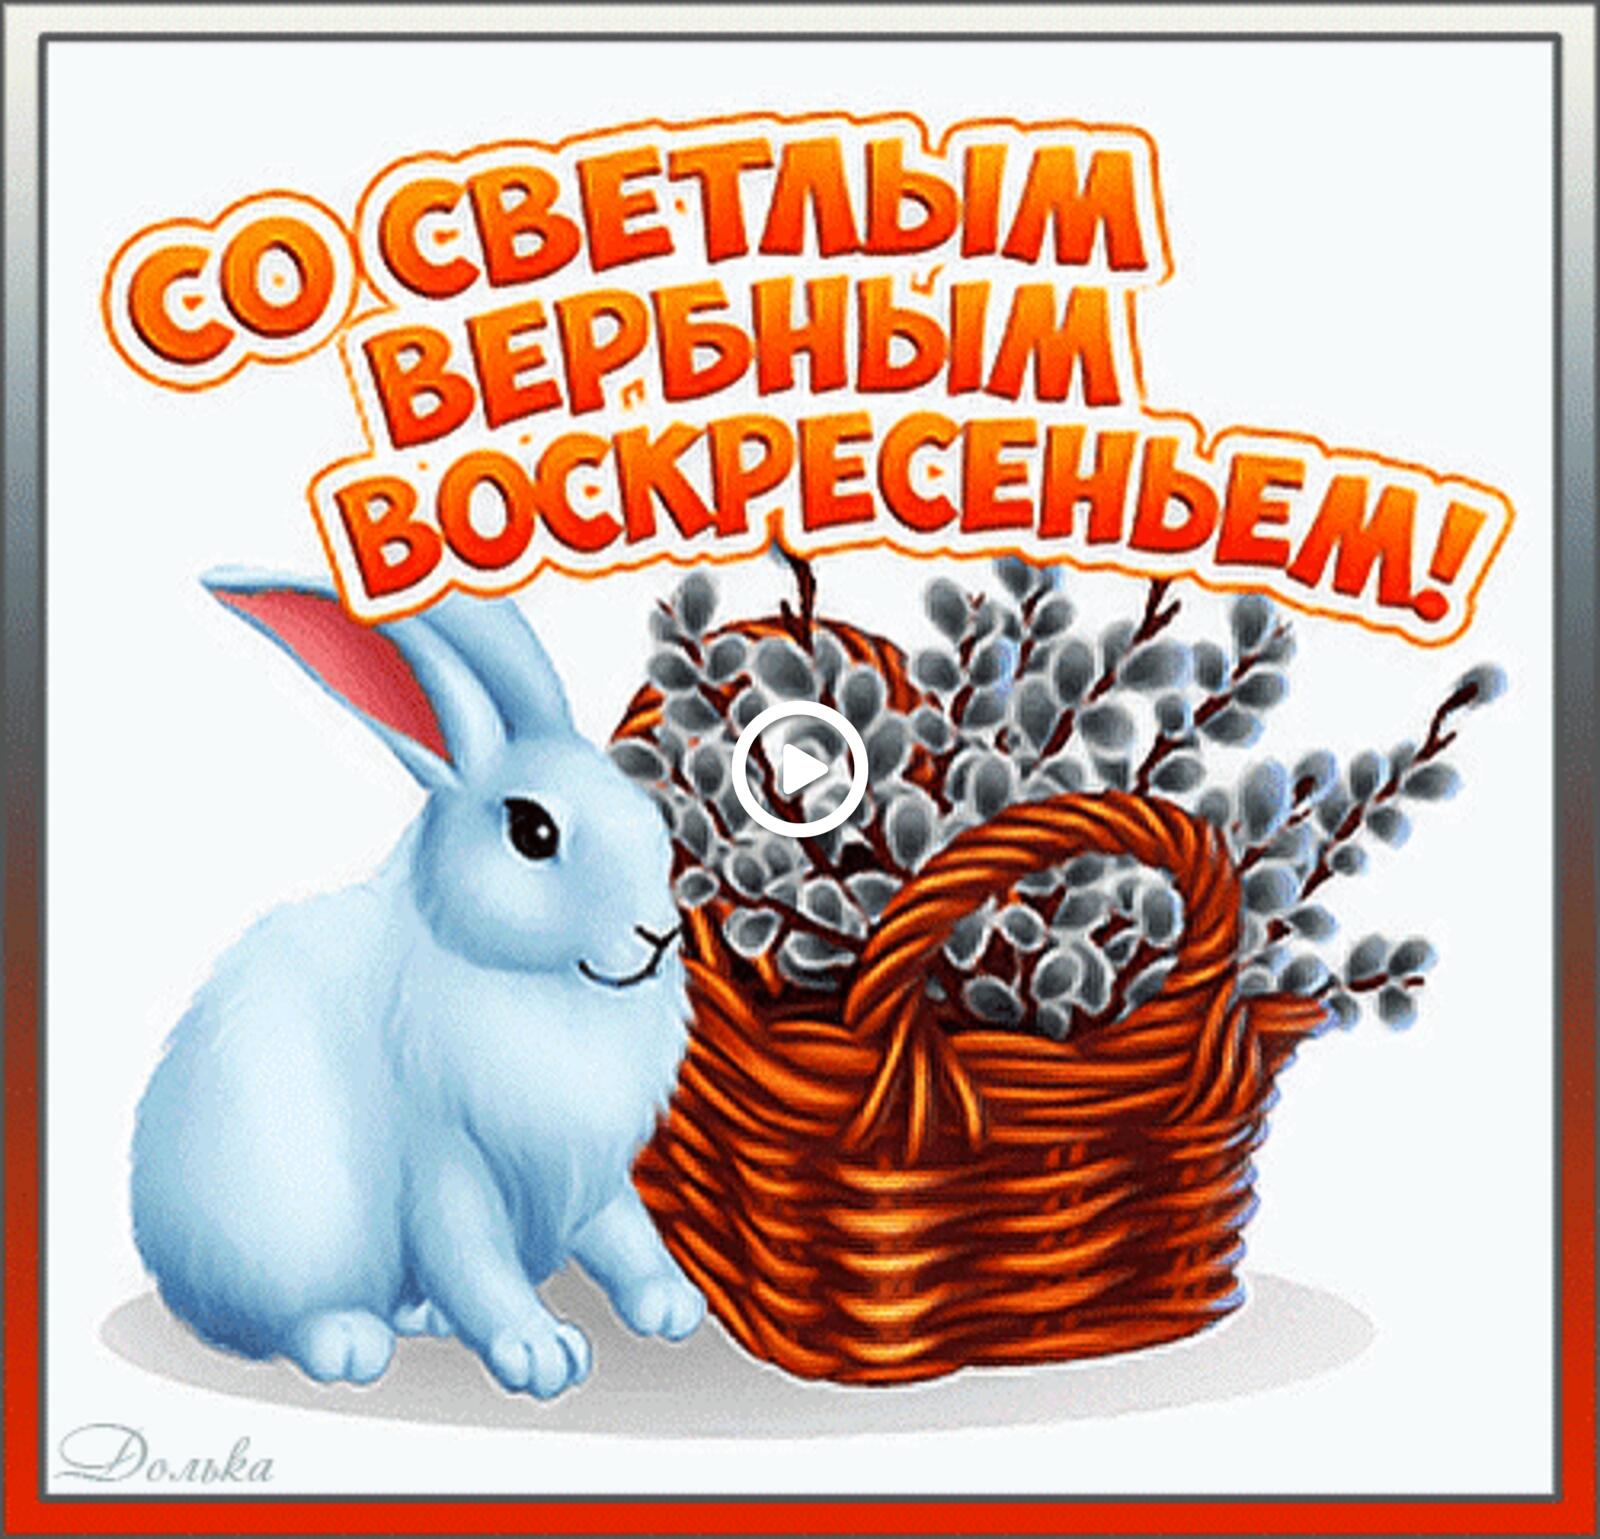 一张以棕榈树主日快乐 节日 兔子为主题的明信片